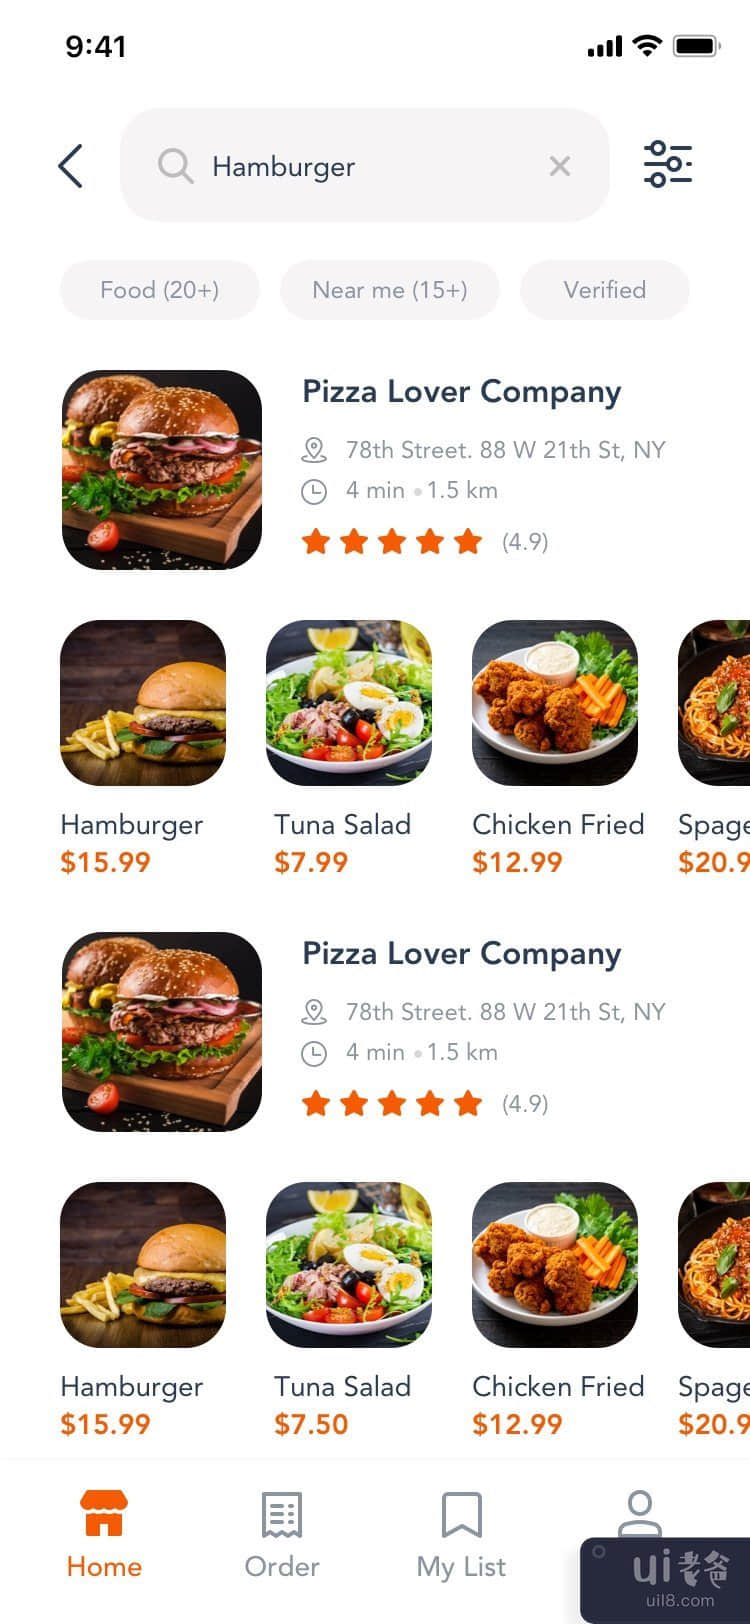 送餐应用模板 UI 套件 #2(Food Delivery App Template Ui Kit #2)插图